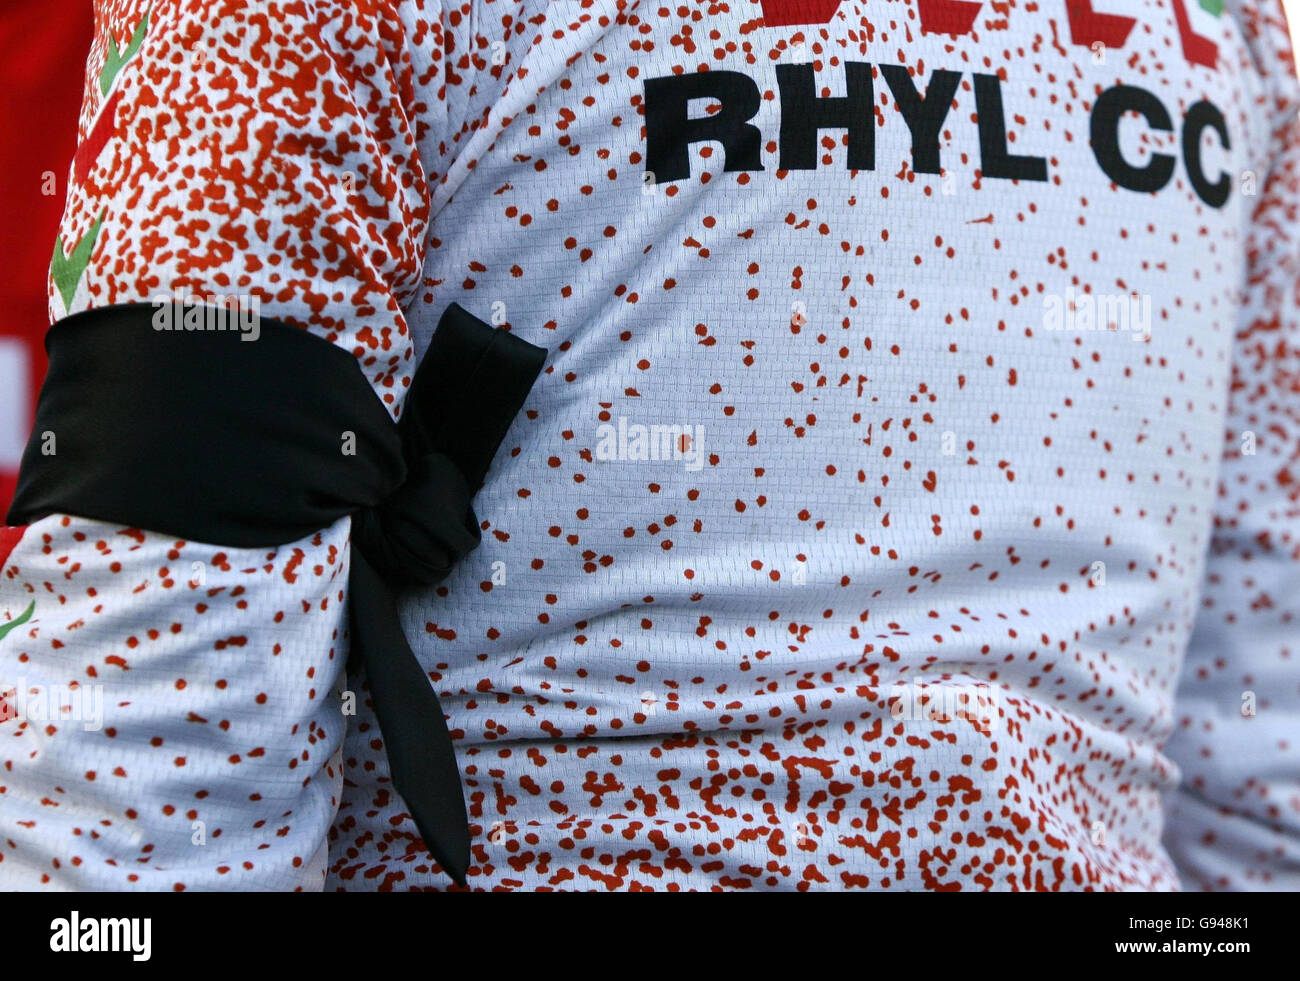 Ein Mitglied des Rhyll Cycling Club trägt eine schwarze Armbinde auf einer Clubfahrt, Sonntag, den 15. Januar 2006 eine Woche nach einem Unfall, bei dem letzte Woche vier Mitglieder in der Nähe von Abergele ums Leben kamen. Der 61-jährige Vorsitzende des Clubs, Maurice Broadbent, Ausschussmitglied Dave Horrocks, 49 und der 42-jährige Wayne Wilkes, wurden sofort getötet, als ein Toyota Corolla auf dem Eis rutschte und sich auf der A547 Rhuddlan Road in die ahnungslosen Fahrer schleuderte. Der Radfahrer John Harland sah auch seinen 14-jährigen Sohn Thomas, der mit ihm unterwegs war, bei dem Zerschlagung gegen 10.00 Uhr sterben. Siehe PA Geschichte UNFALL Radfahrer. DRÜCKEN SIE VERBANDSFOTO. Stockfoto